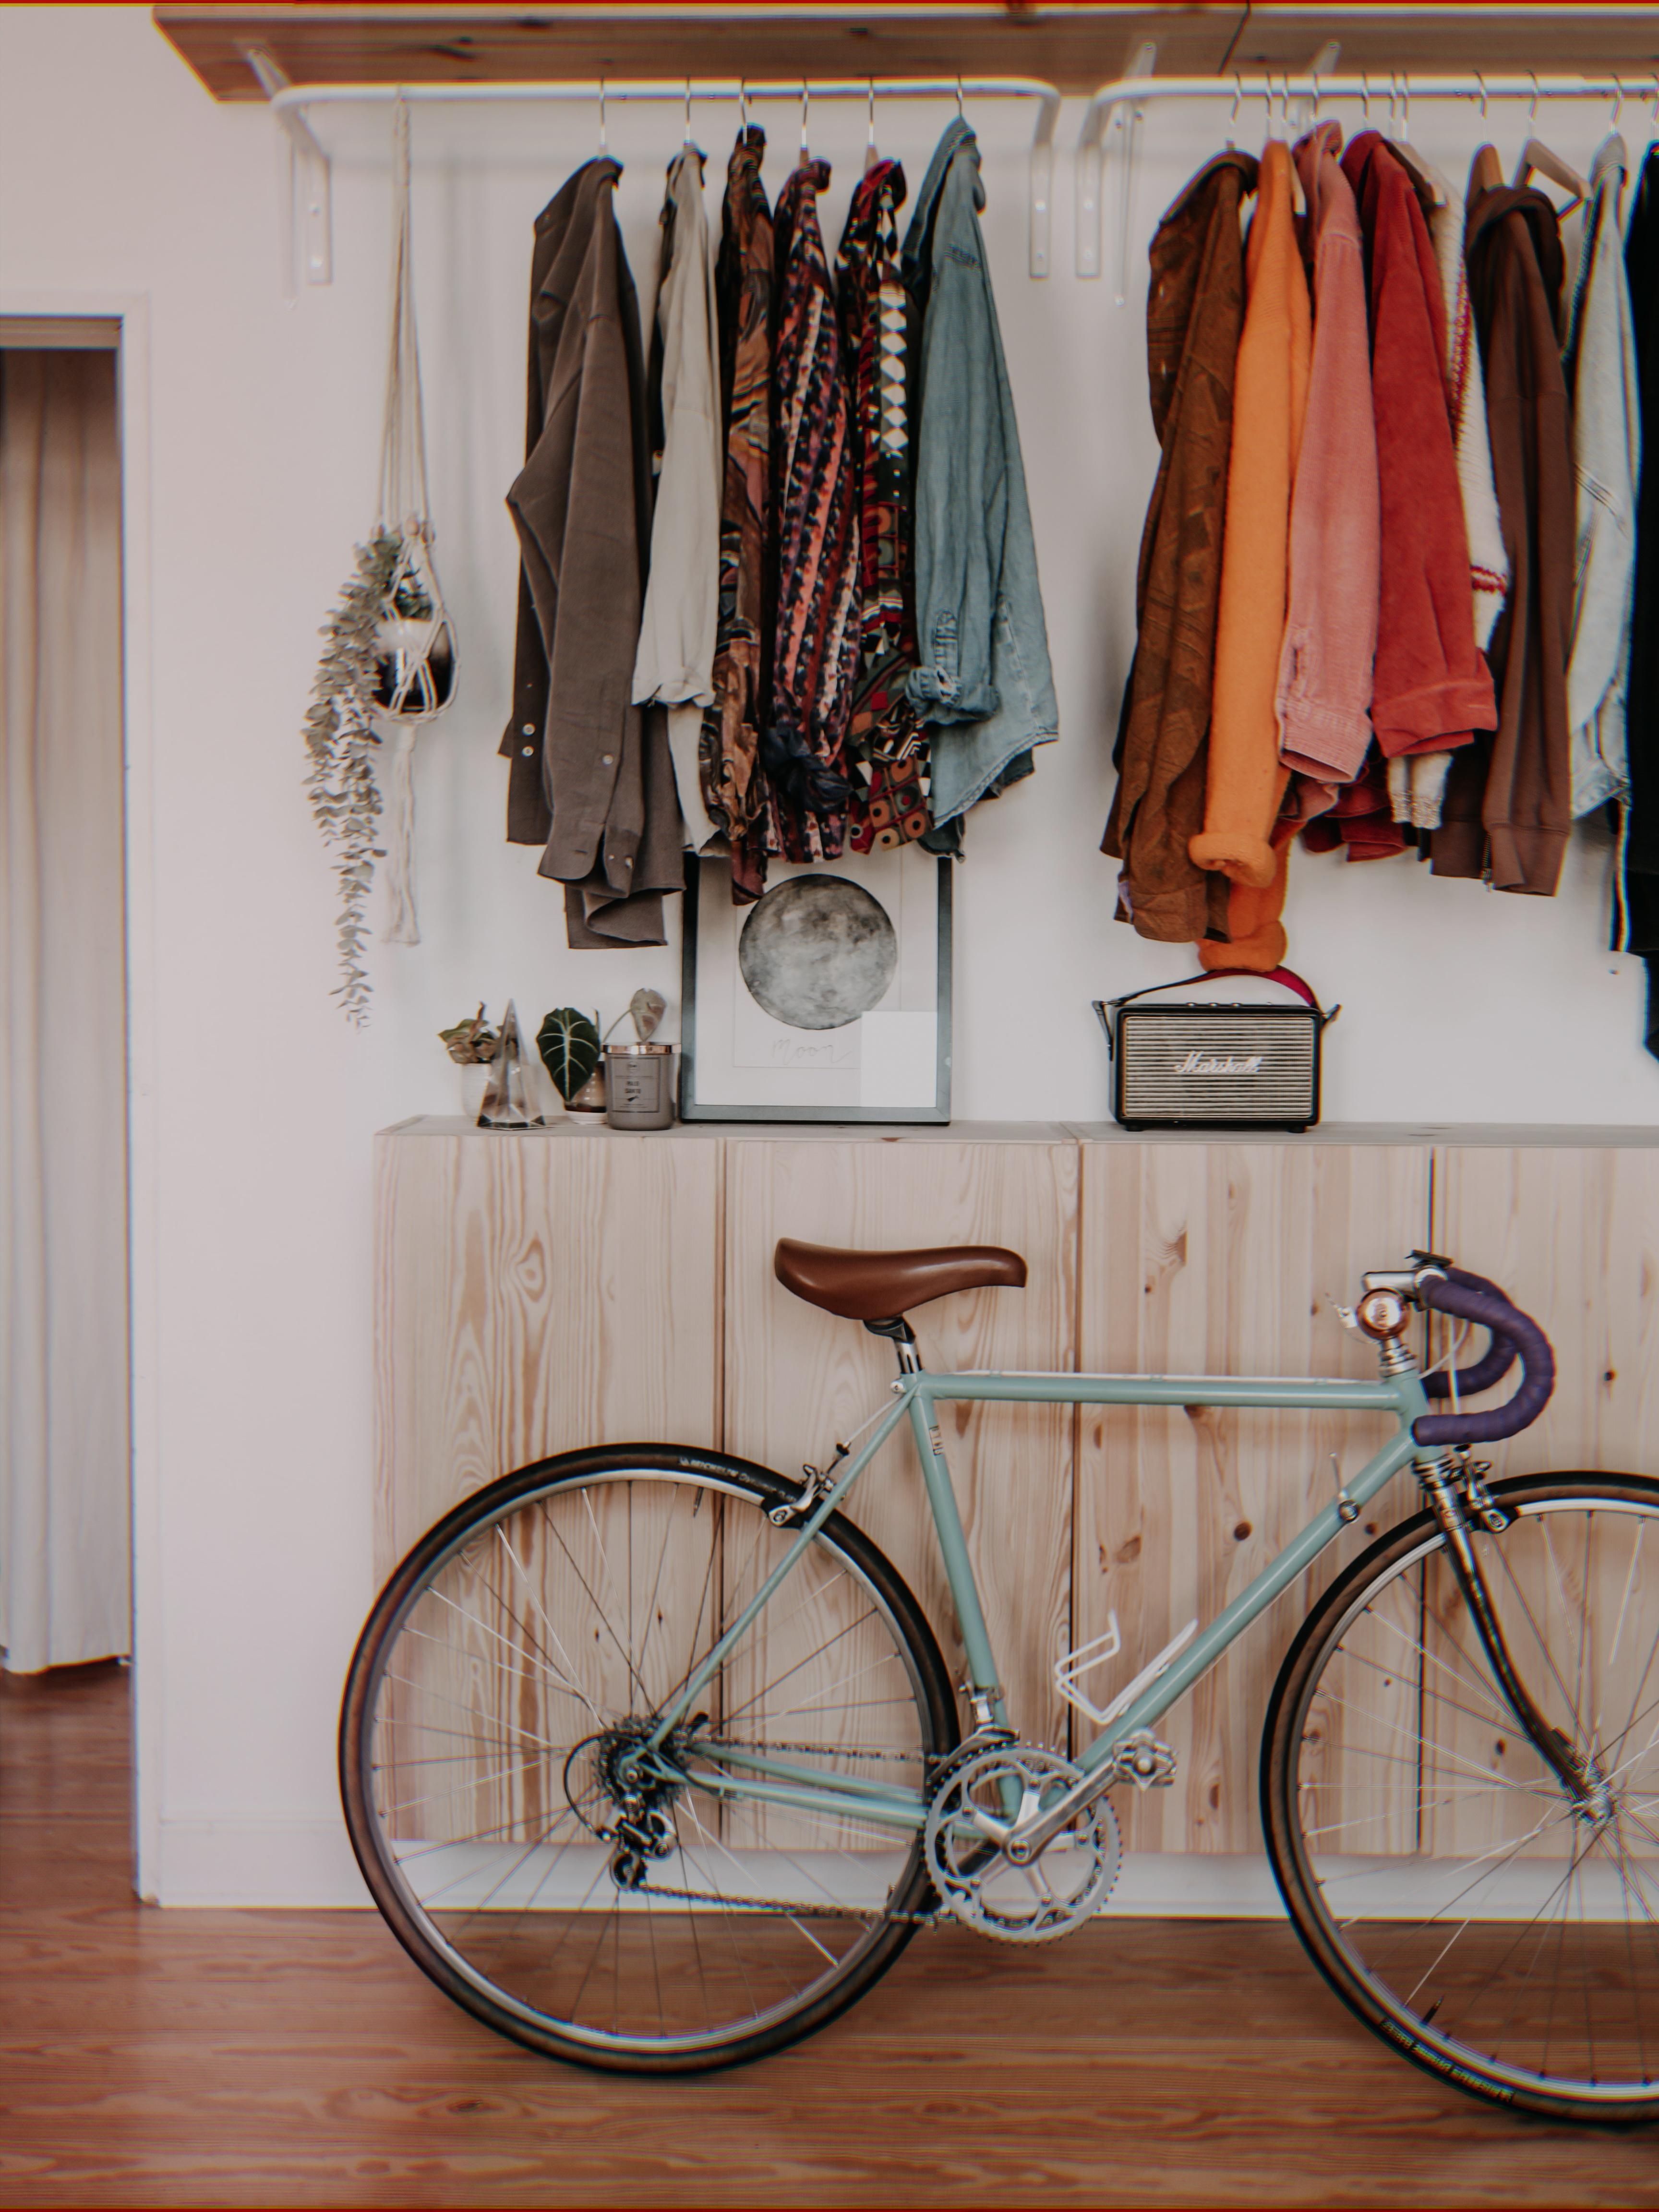 Kleiderschrank-, Pflanzen-, und Fahrradliebe in einem Bild #cozyhome 


#frühling #details #ikeaivar 